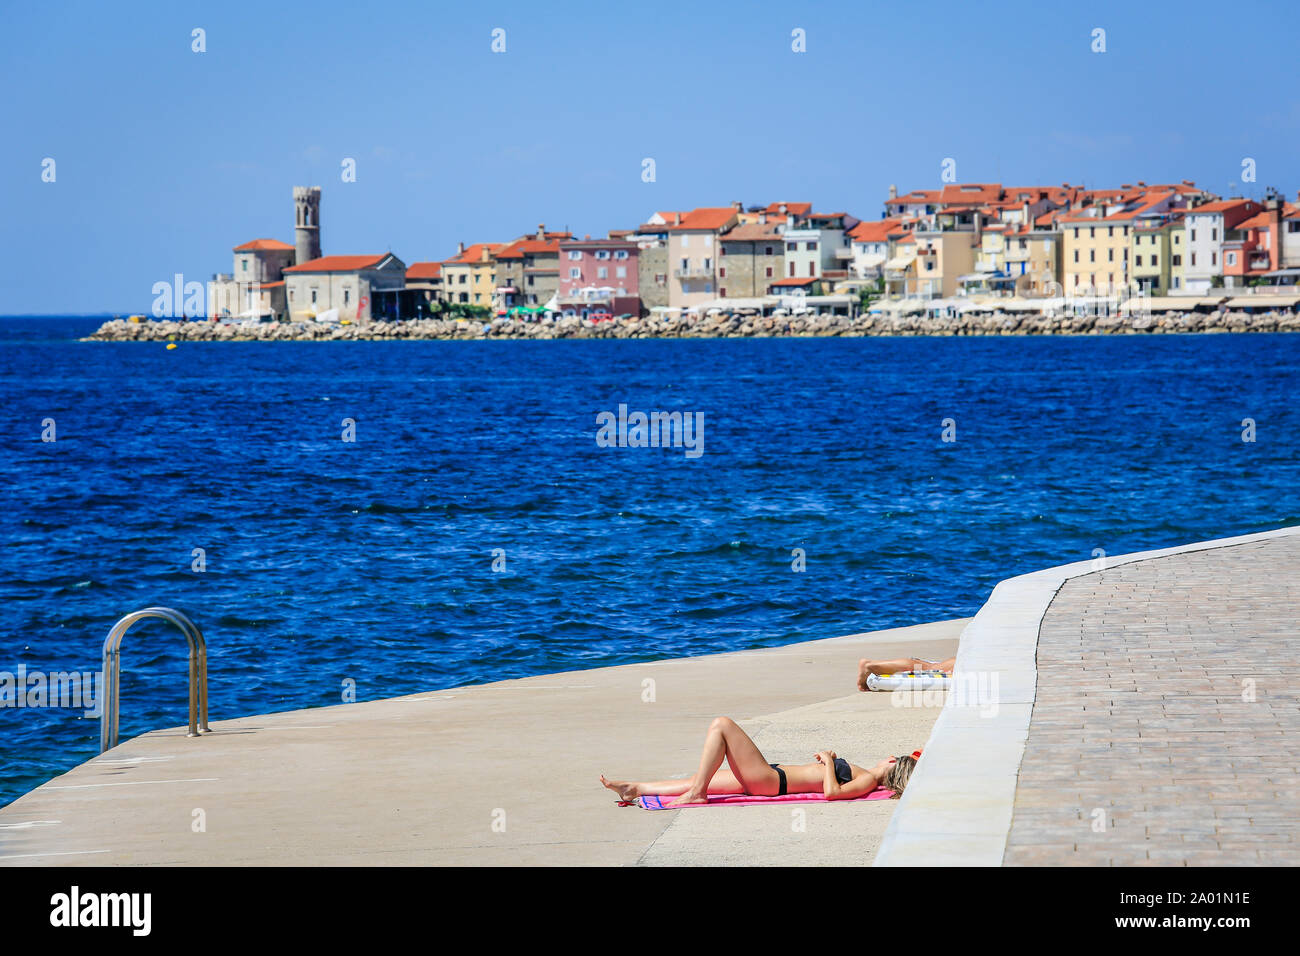 Piran, Istrie, Slovénie - baigneurs à la plage en béton Fornace de la ville portuaire Piran à la mer Méditerranée. Piran, Istrien, Slowenien - Badende Banque D'Images